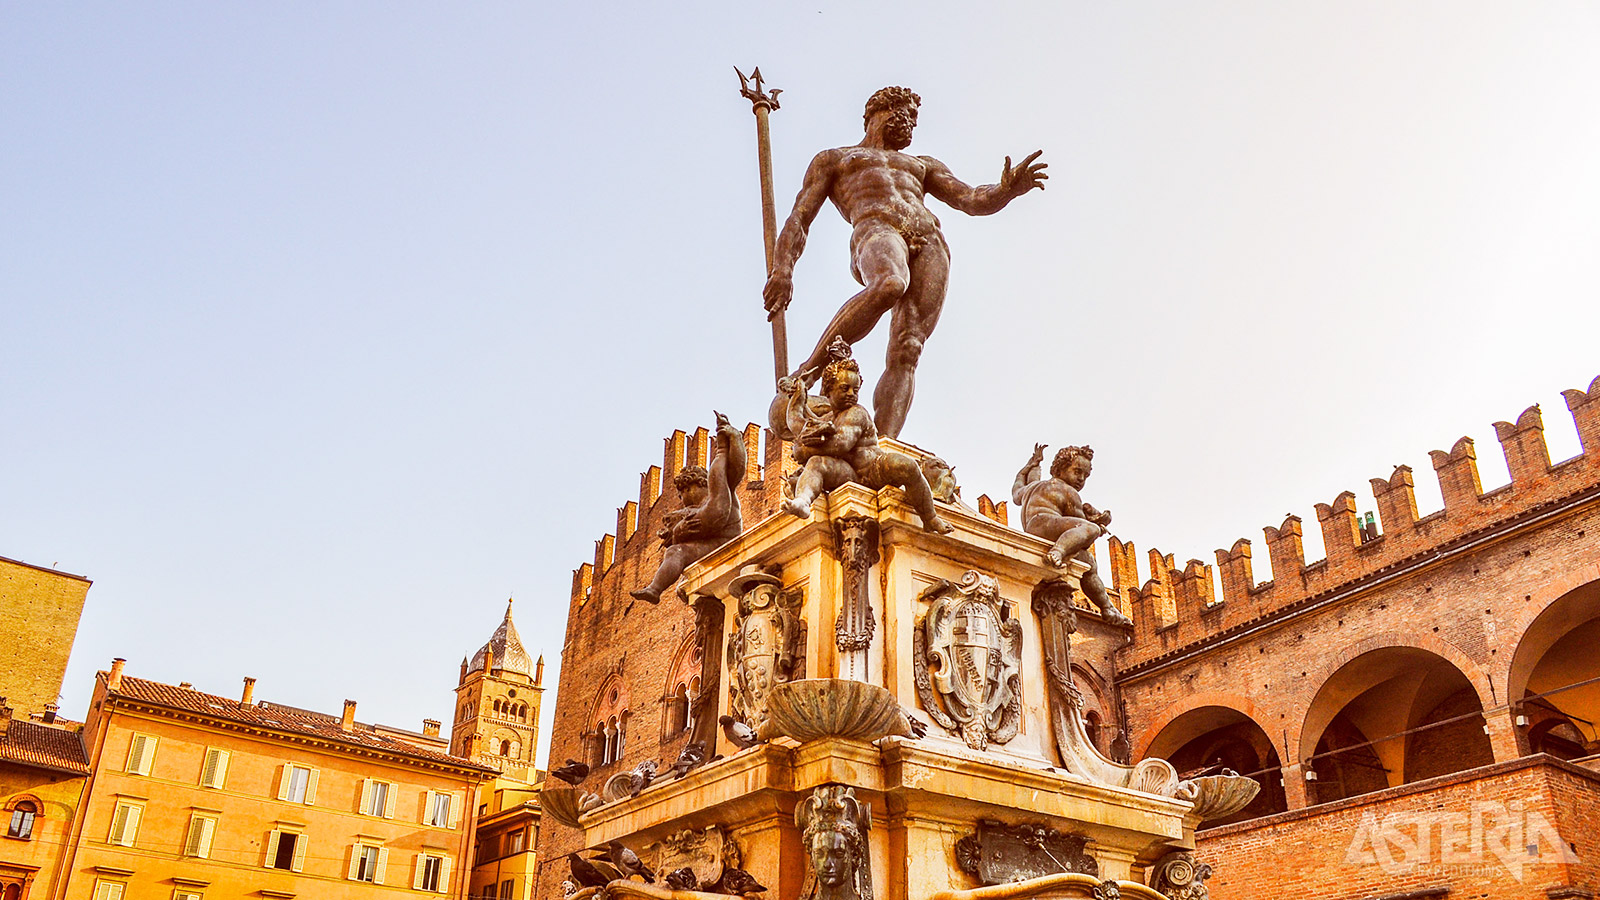 Op Piazza del Nettuno vind je de Fontana del Nettuno, een 16de-eeuwse fontein ter ere van Neptunus, de Griekse god van de zee